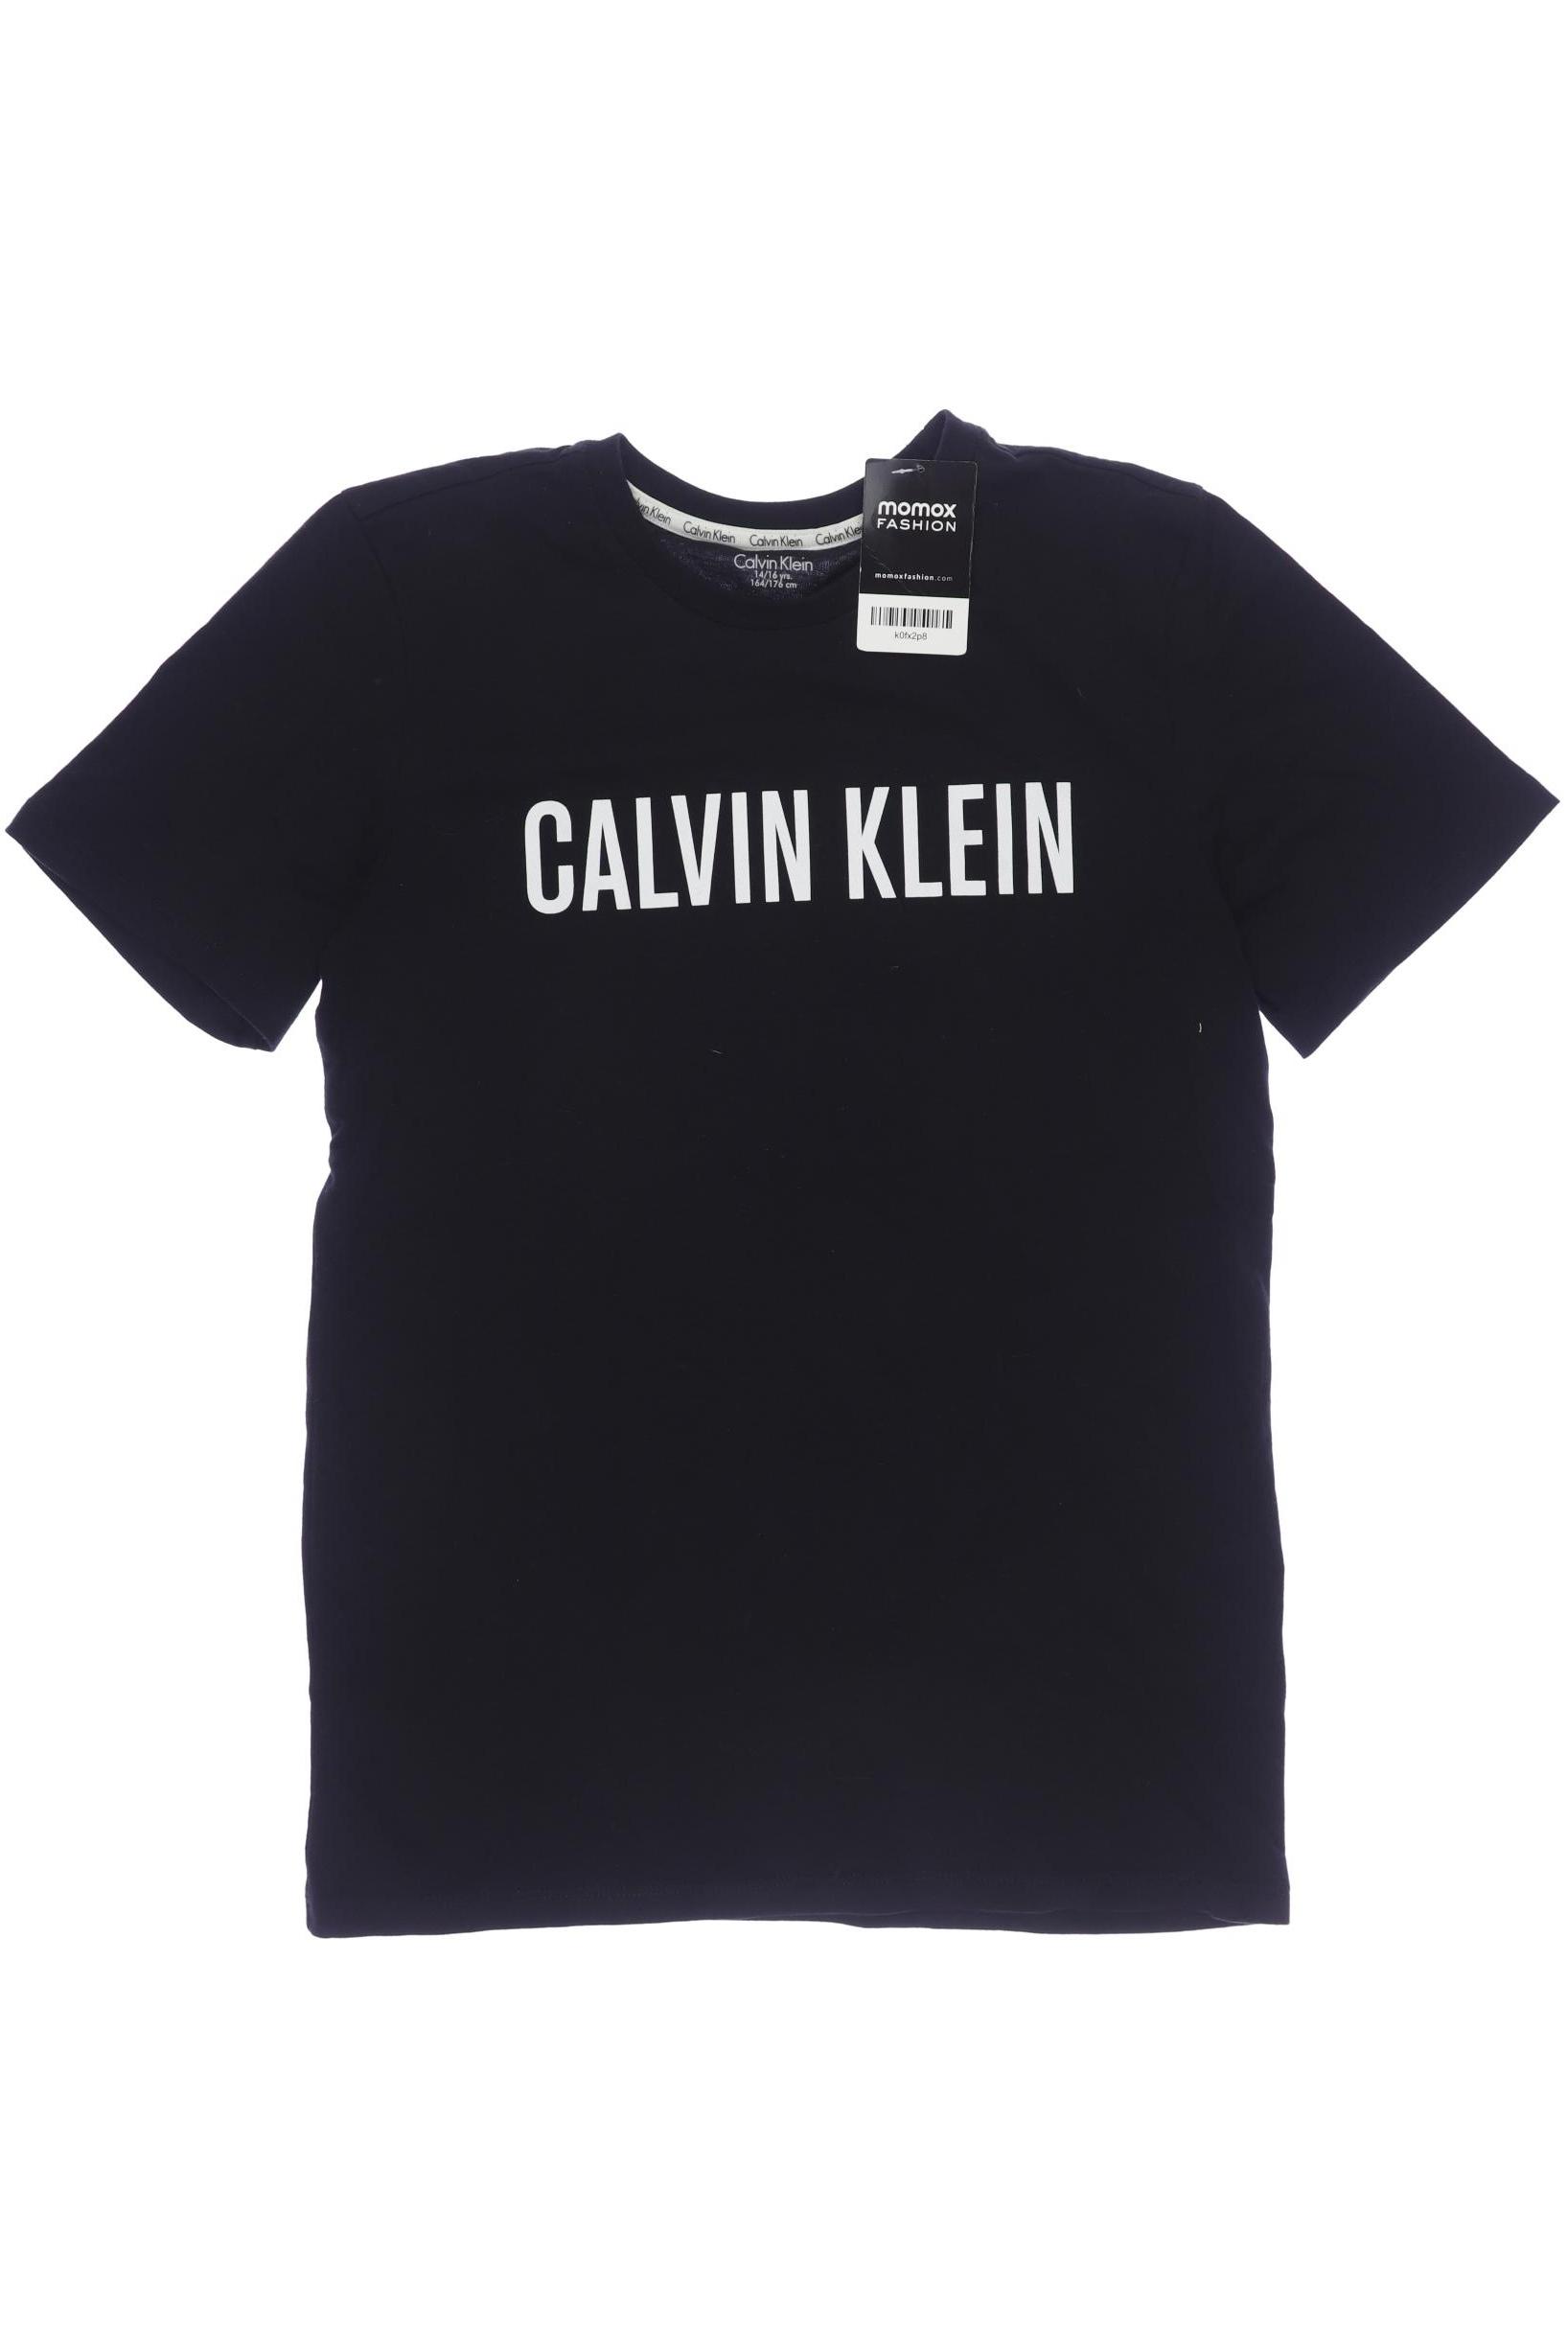 Calvin Klein Damen T-Shirt, schwarz, Gr. 164 von Calvin Klein